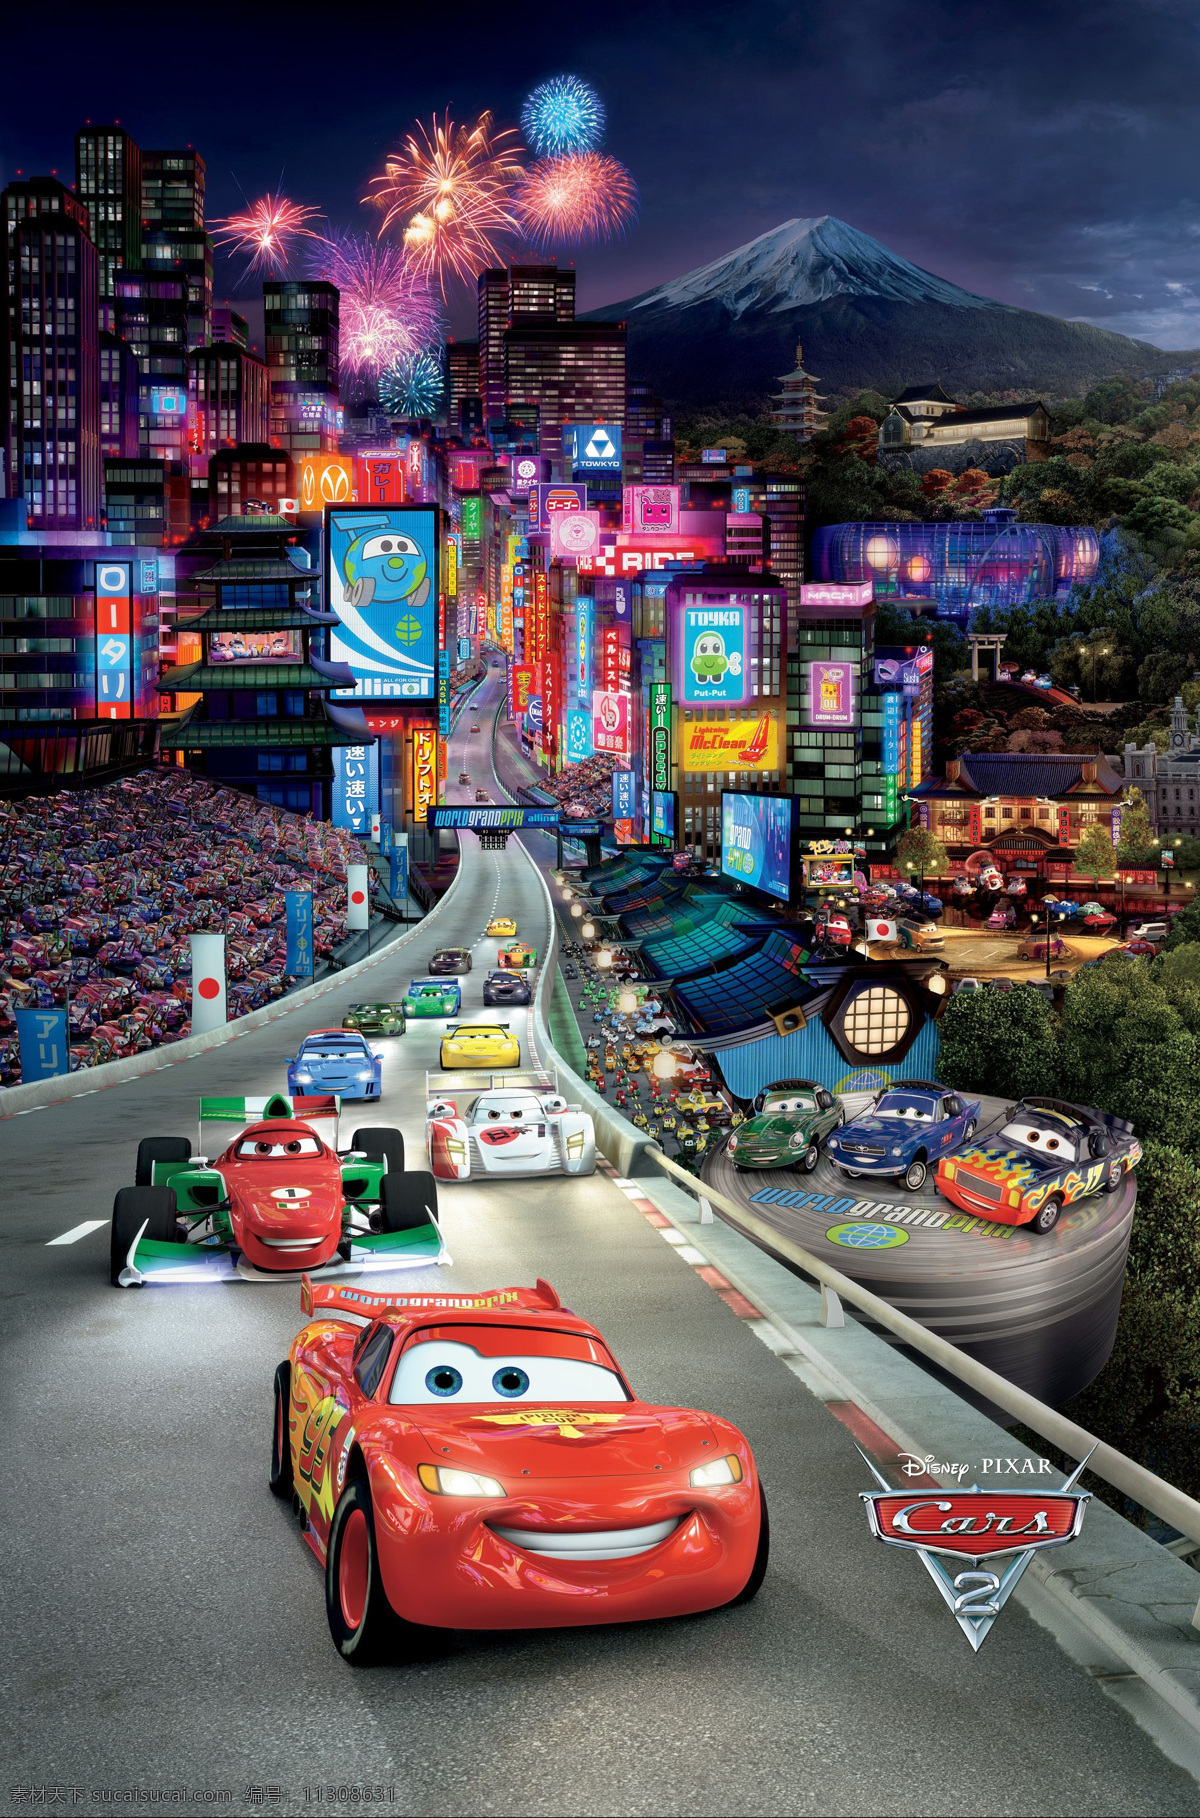 赛车总动员2 赛车总动员 飞车正传 闪电 麦坤 跑车 动画 动画片 皮克斯 皮克斯动画 预告版 正式版 迪士尼电影 经典动画电影 pixar 文化艺术 影视娱乐